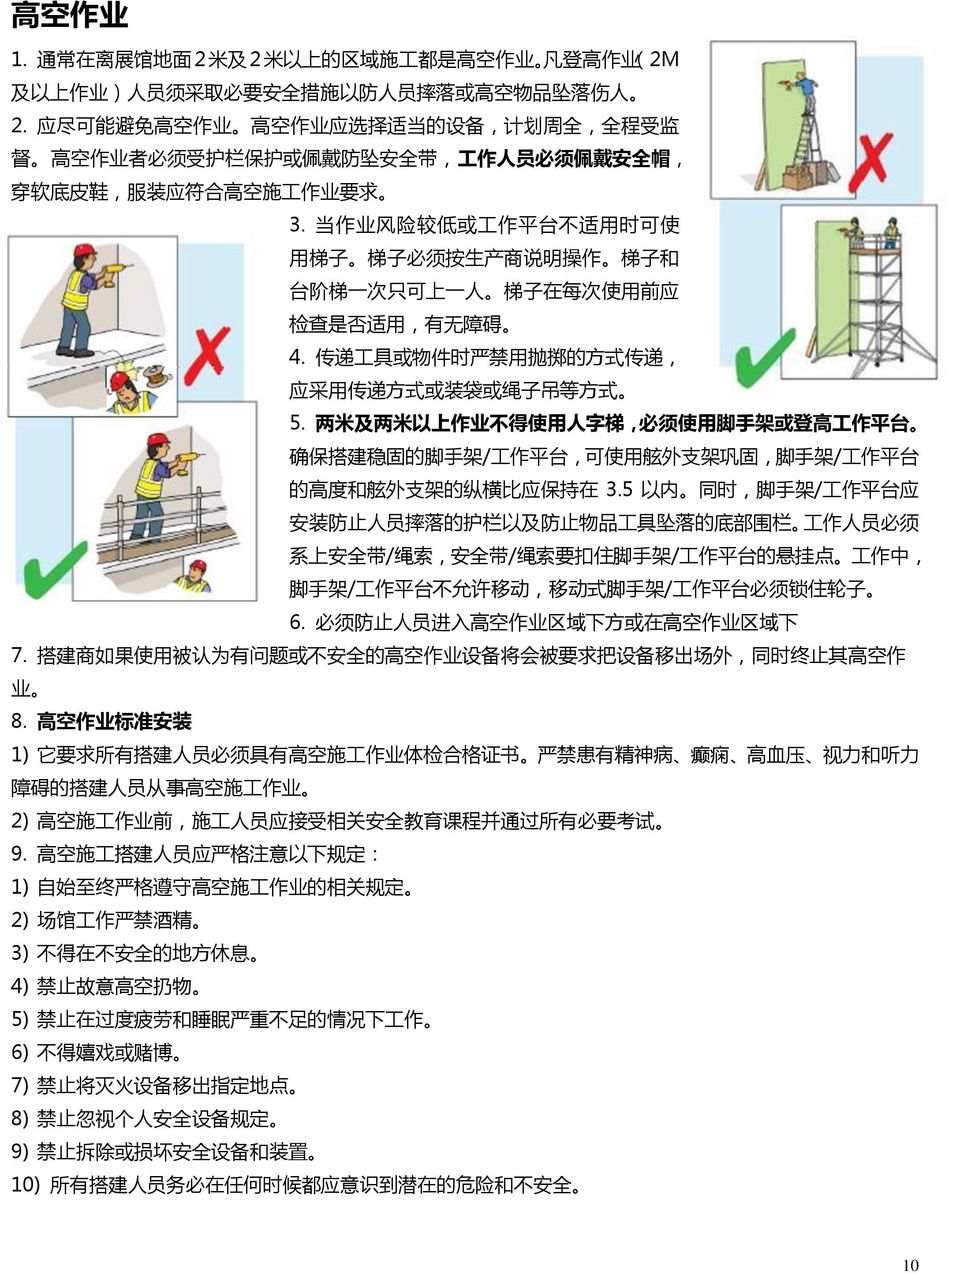 当 作 业 风 险 较 低 或 工 作 平 台 不 适 用 时 可 使 用 梯 子 梯 子 必 须 按 生 产 商 说 明 操 作 梯 子 和 台 阶 梯 一 次 只 可 上 一 人 梯 子 在 每 次 使 用 前 应 检 查 是 否 适 用, 有 无 障 碍 4.